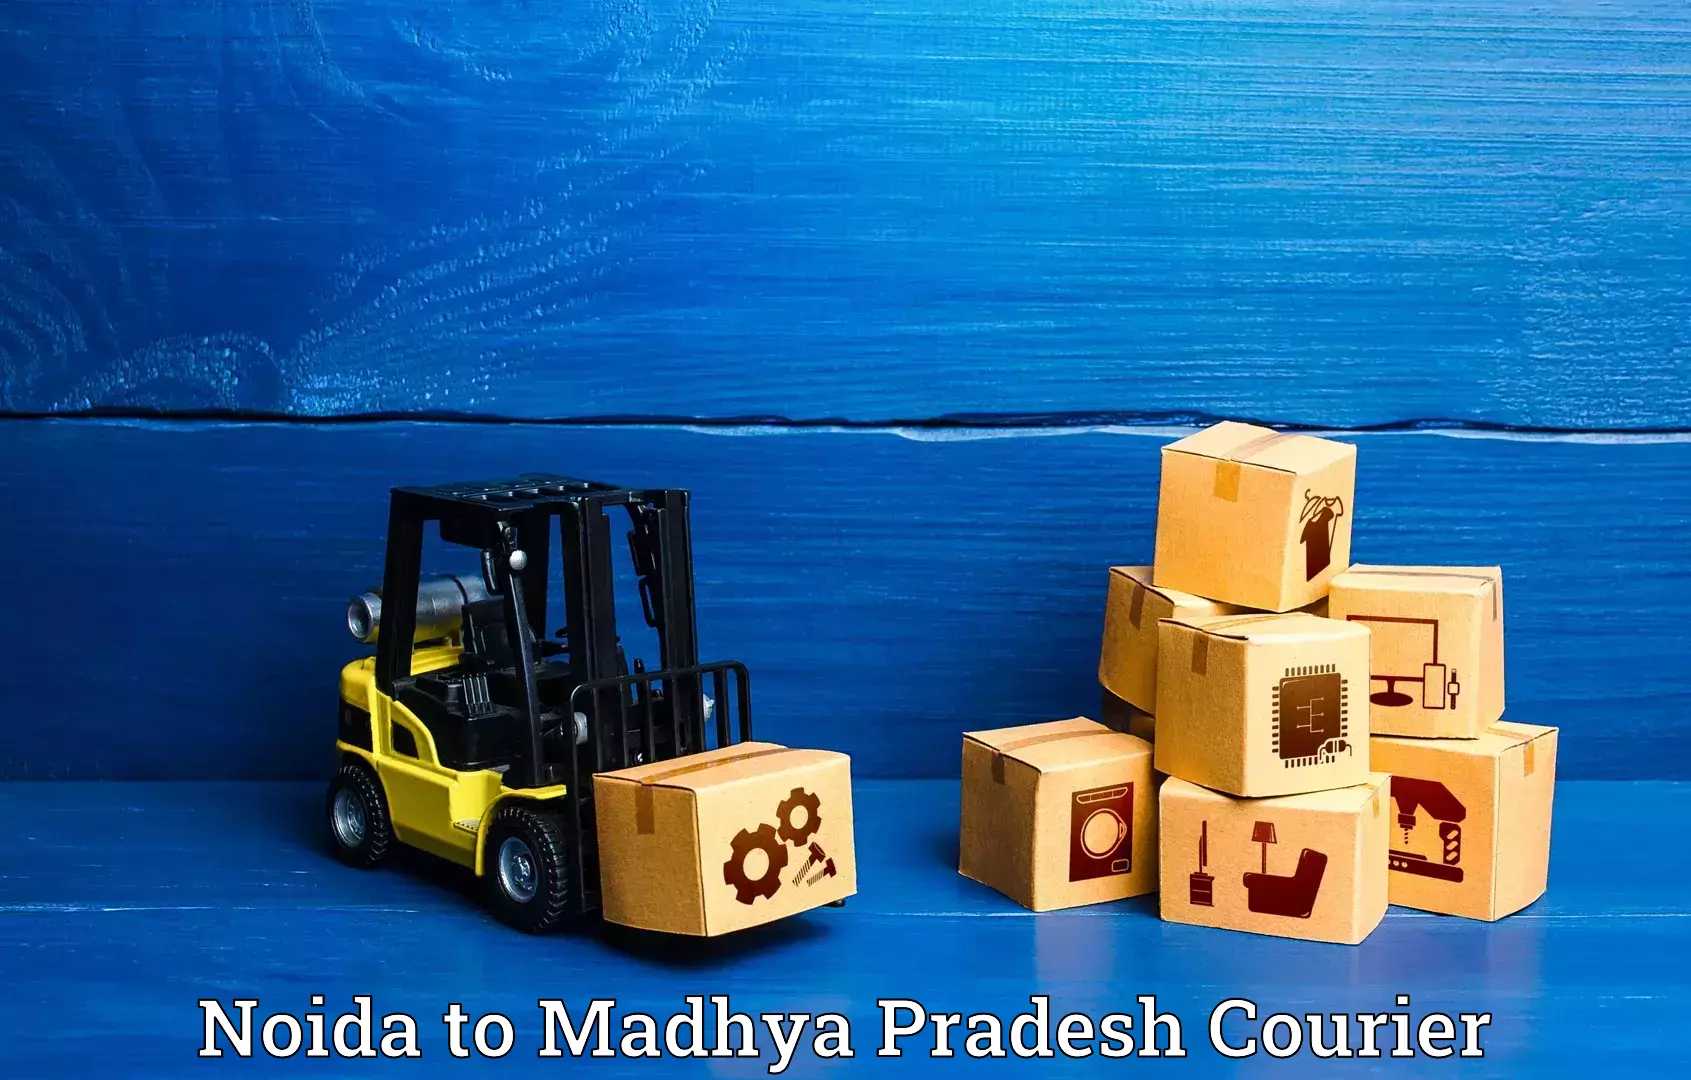 Nationwide luggage courier Noida to Maheshwar